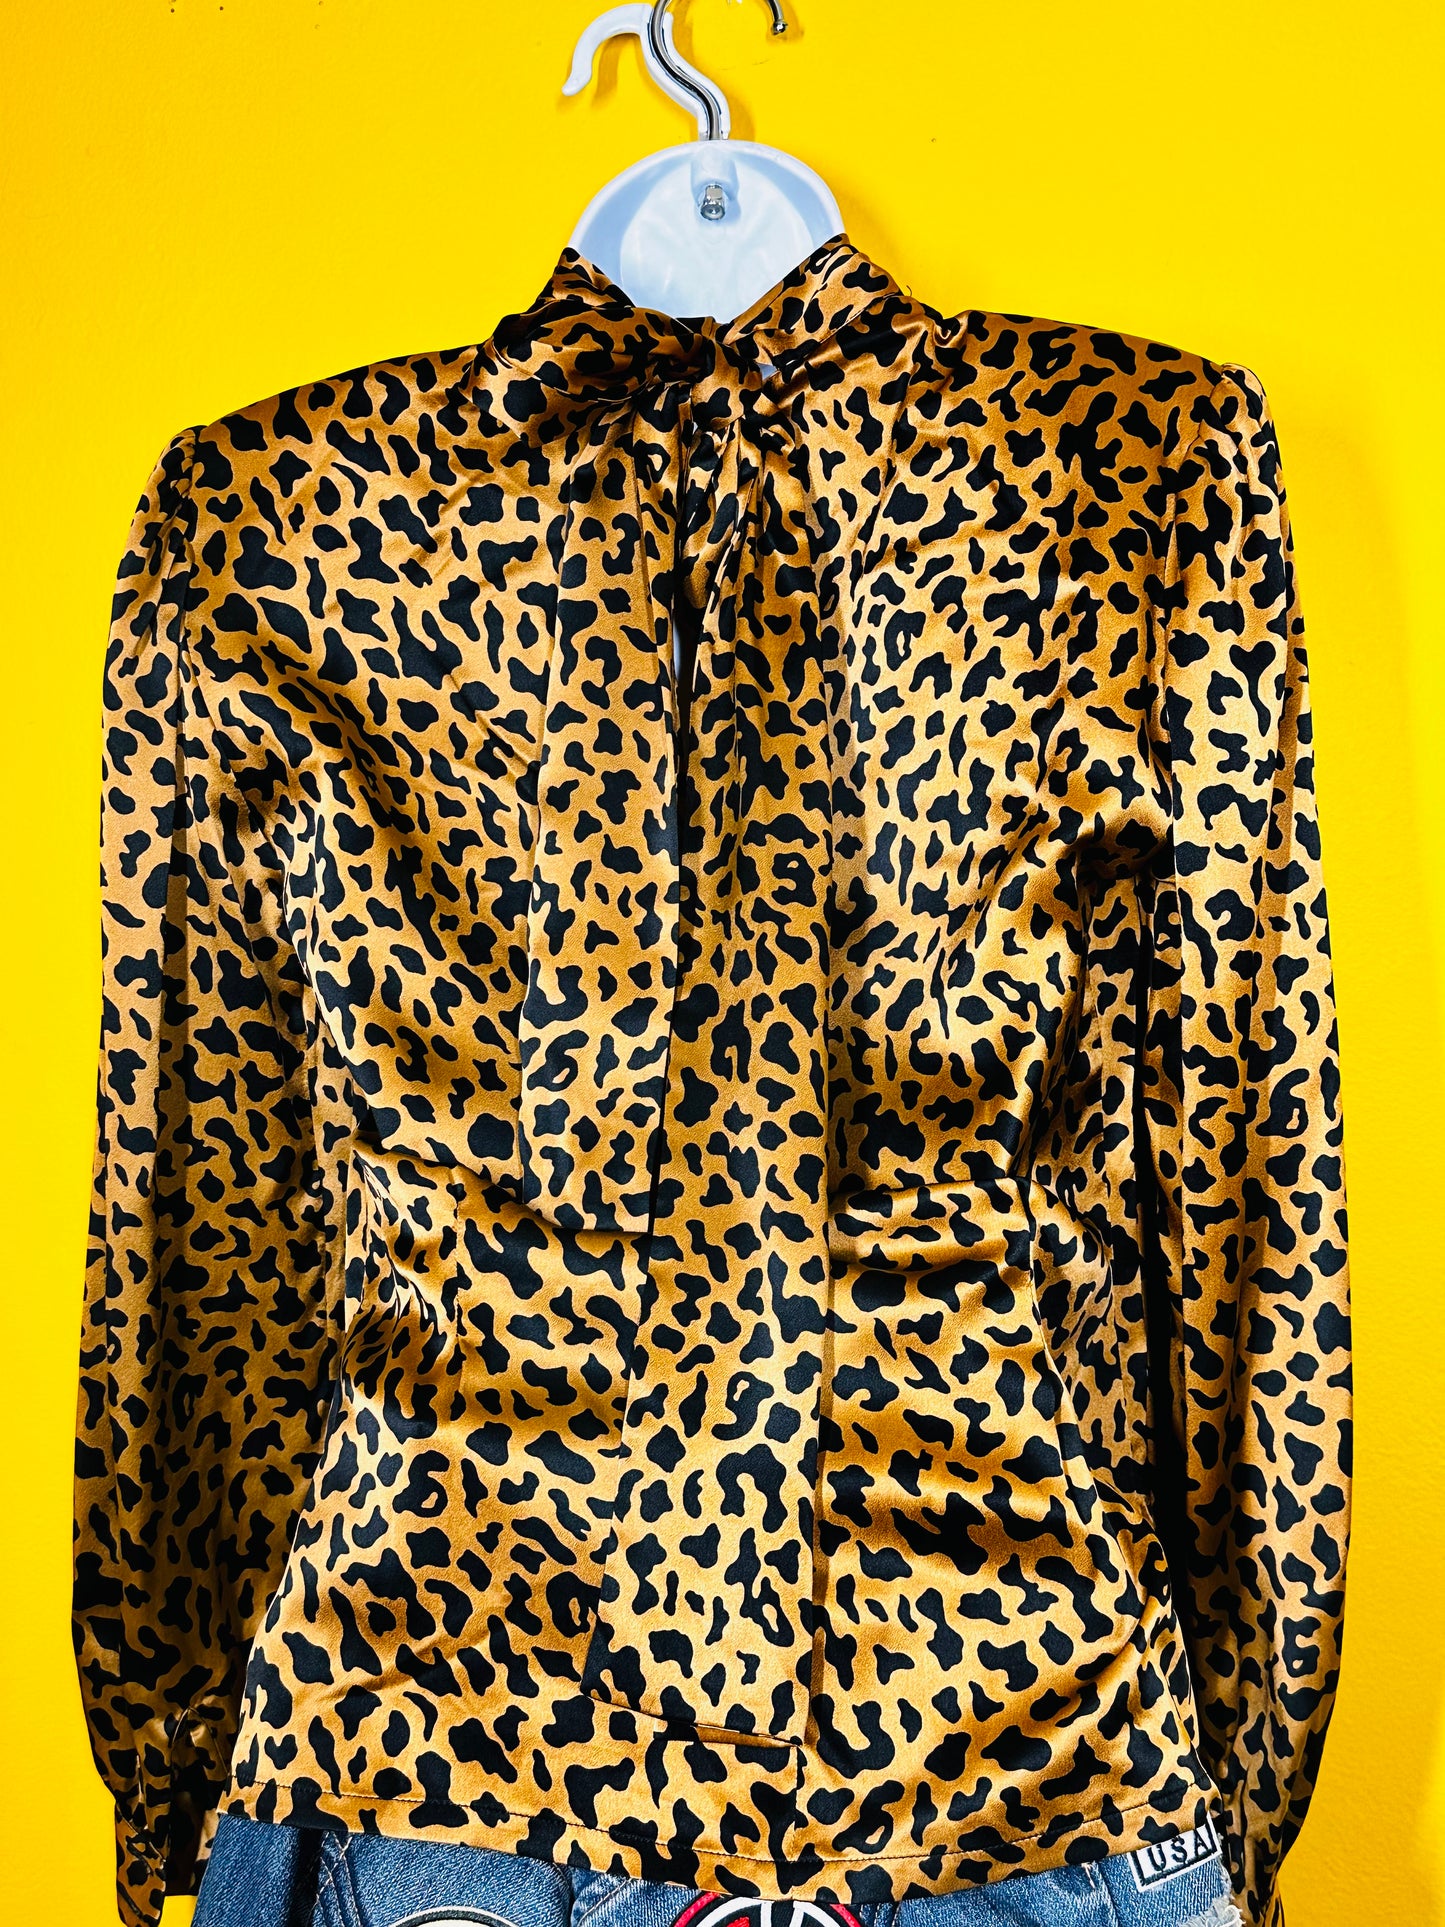 I Magnin Vintage Leopard 100% Silk Blouse